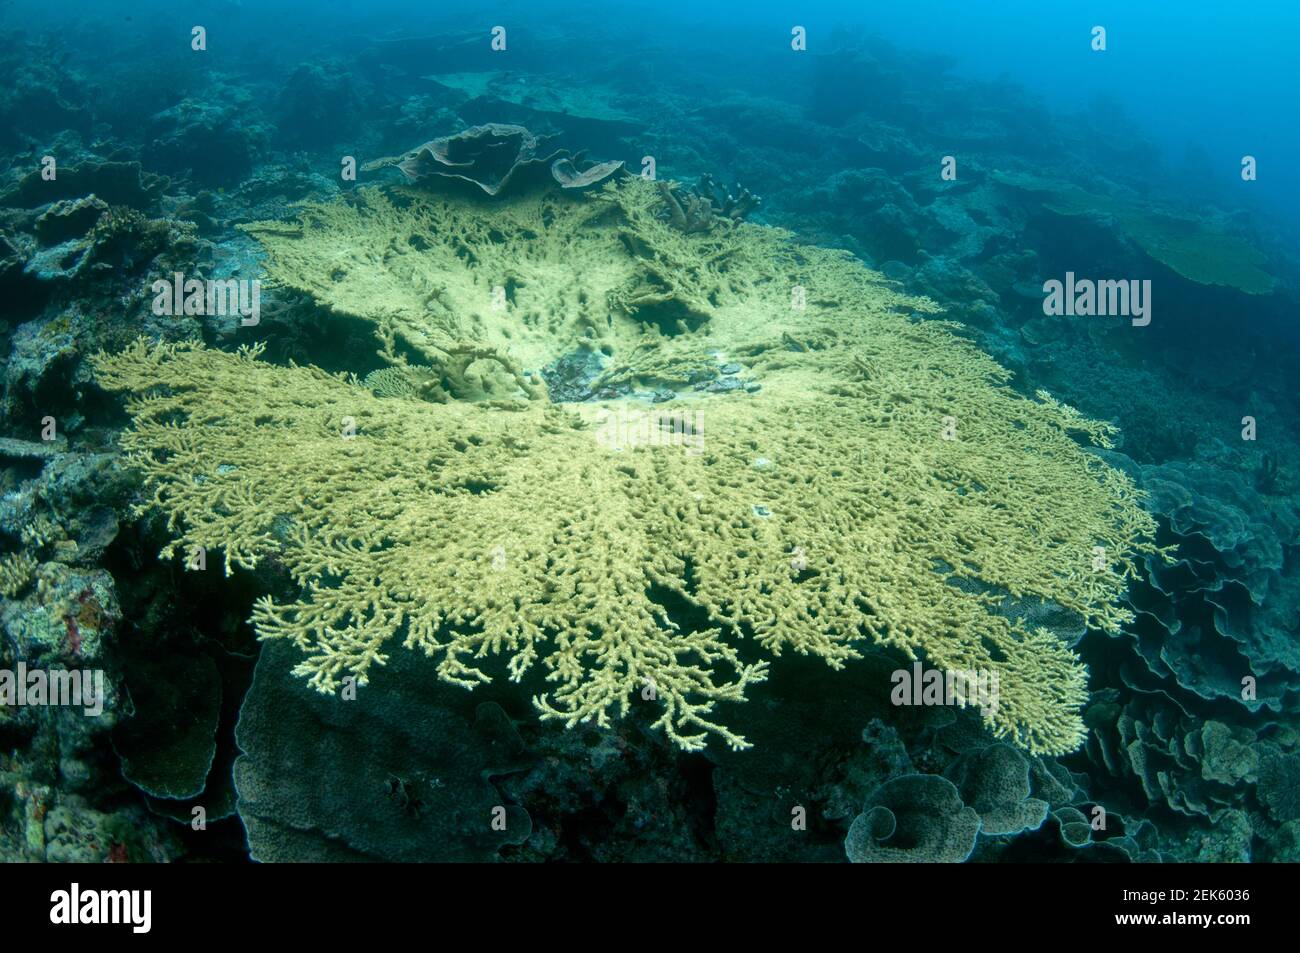 Table Coral, Acrospora sp, Lava Flow, cerca de la isla de banda, Mar de banda, Indonesia Foto de stock